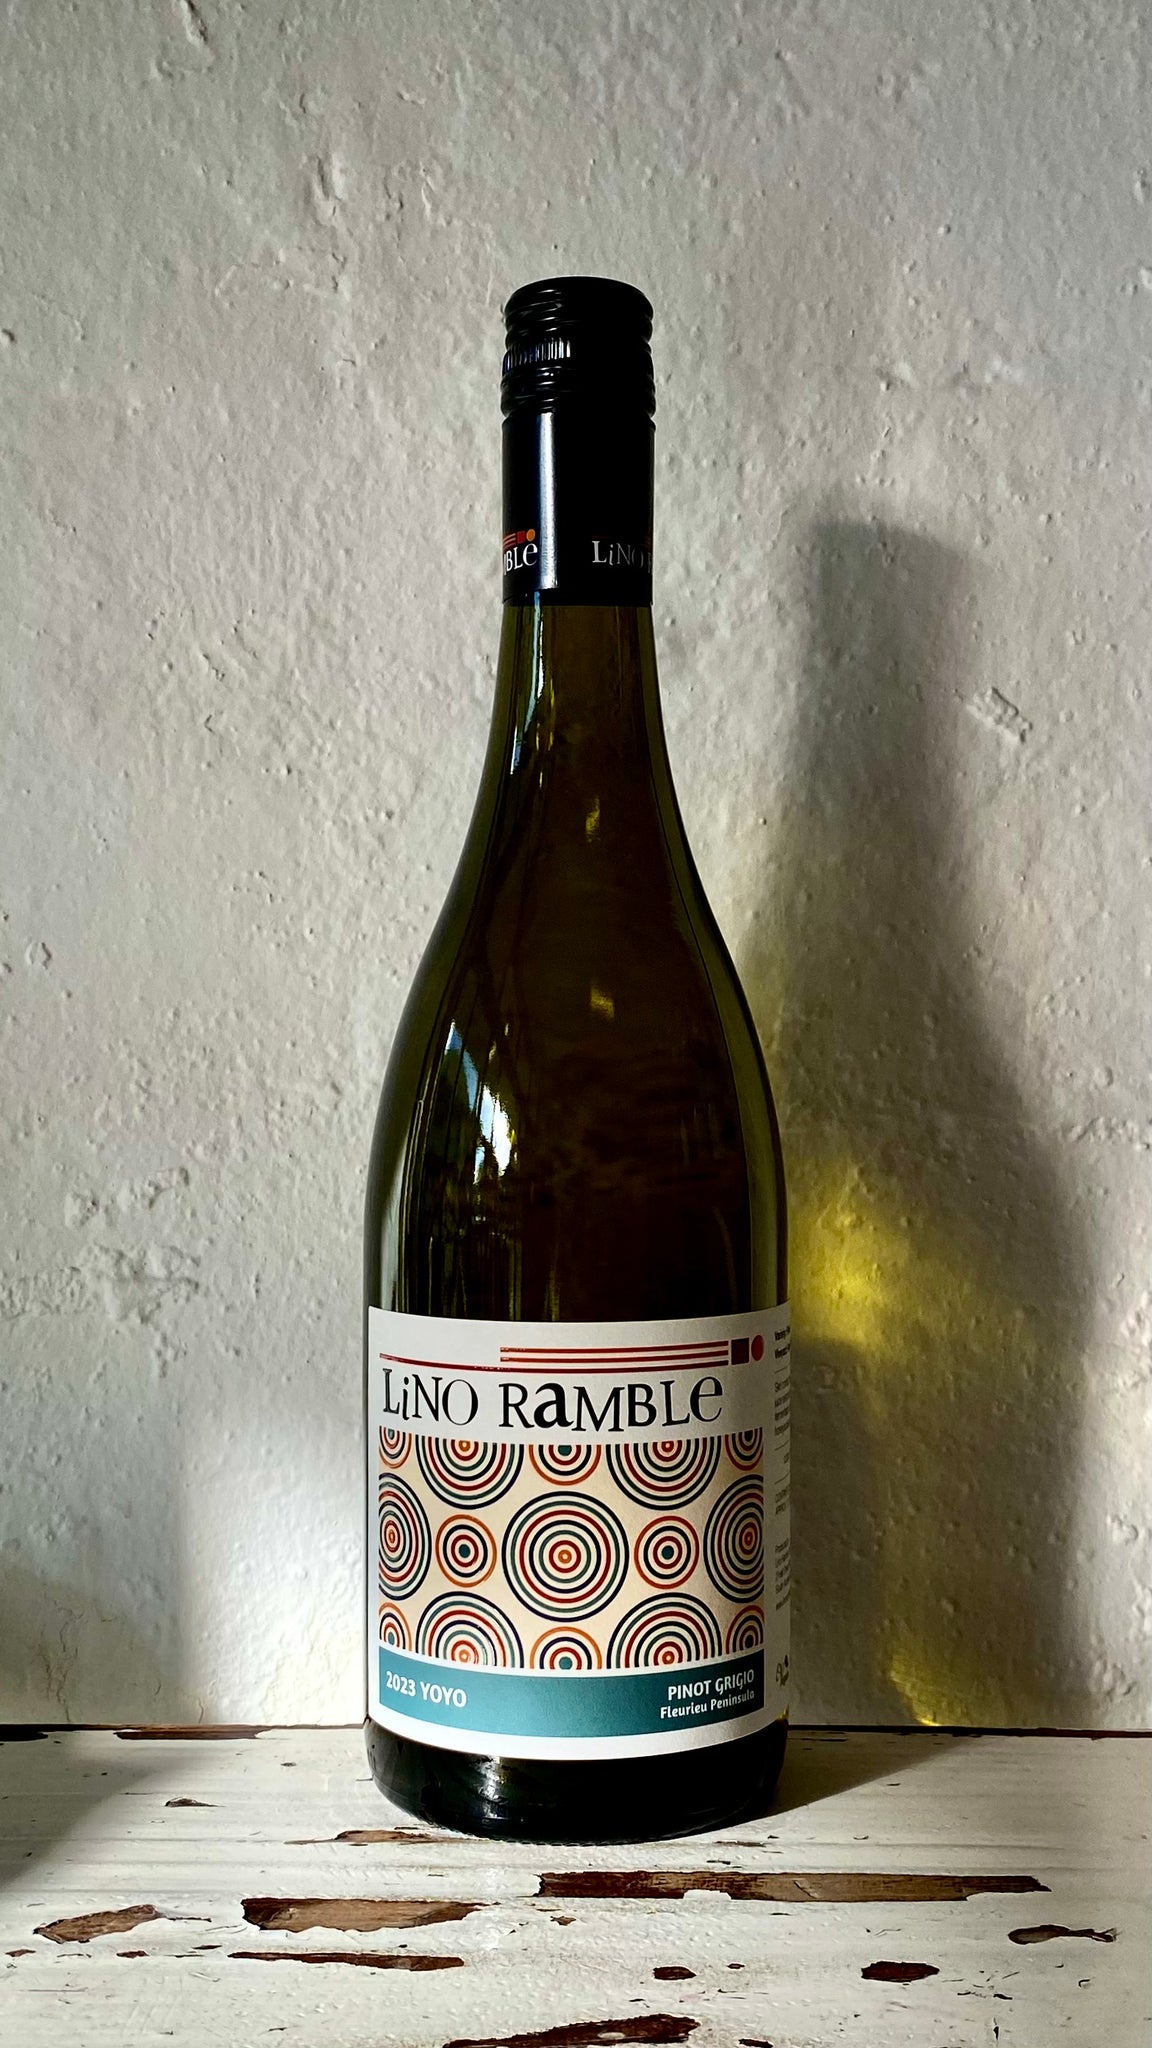 2023 Lino Ramble YOYO Pinot Grigio